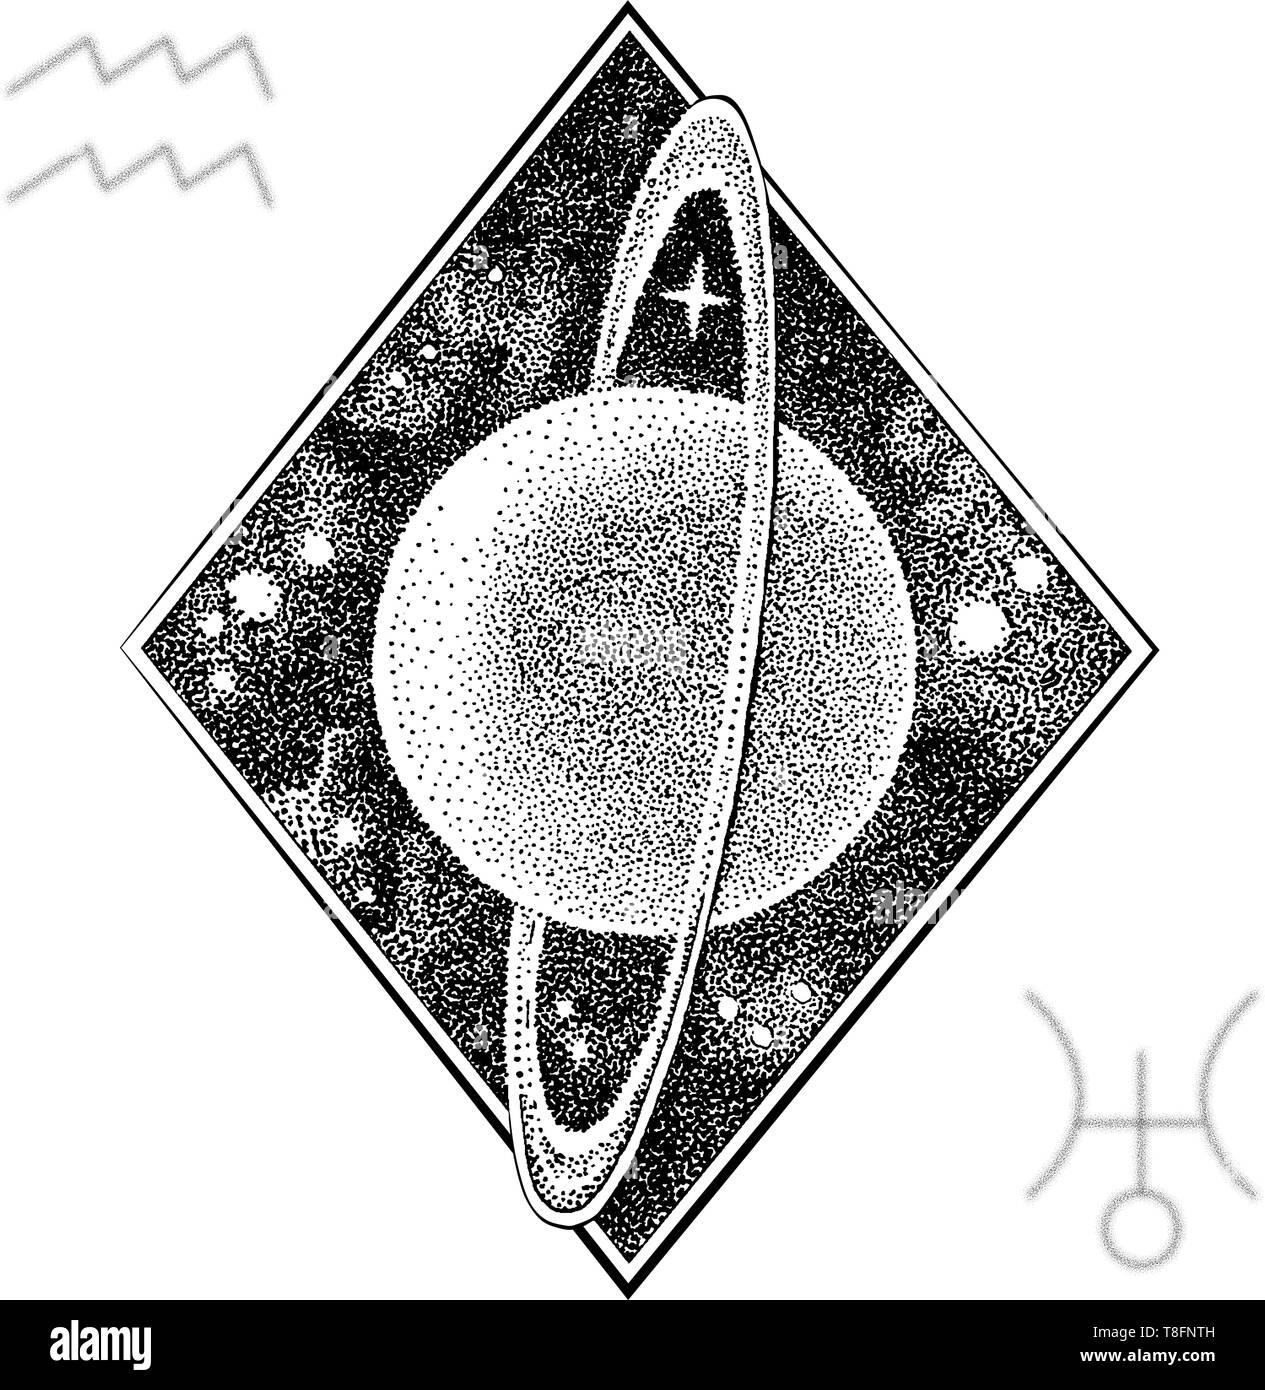 Planète Uranus . Hand drawn vector illustration dans le style dotwork avec symbole astrologique et un symbole du Verseau signe du zodiaque. Concept de l'espace, l'astrolog Illustration de Vecteur